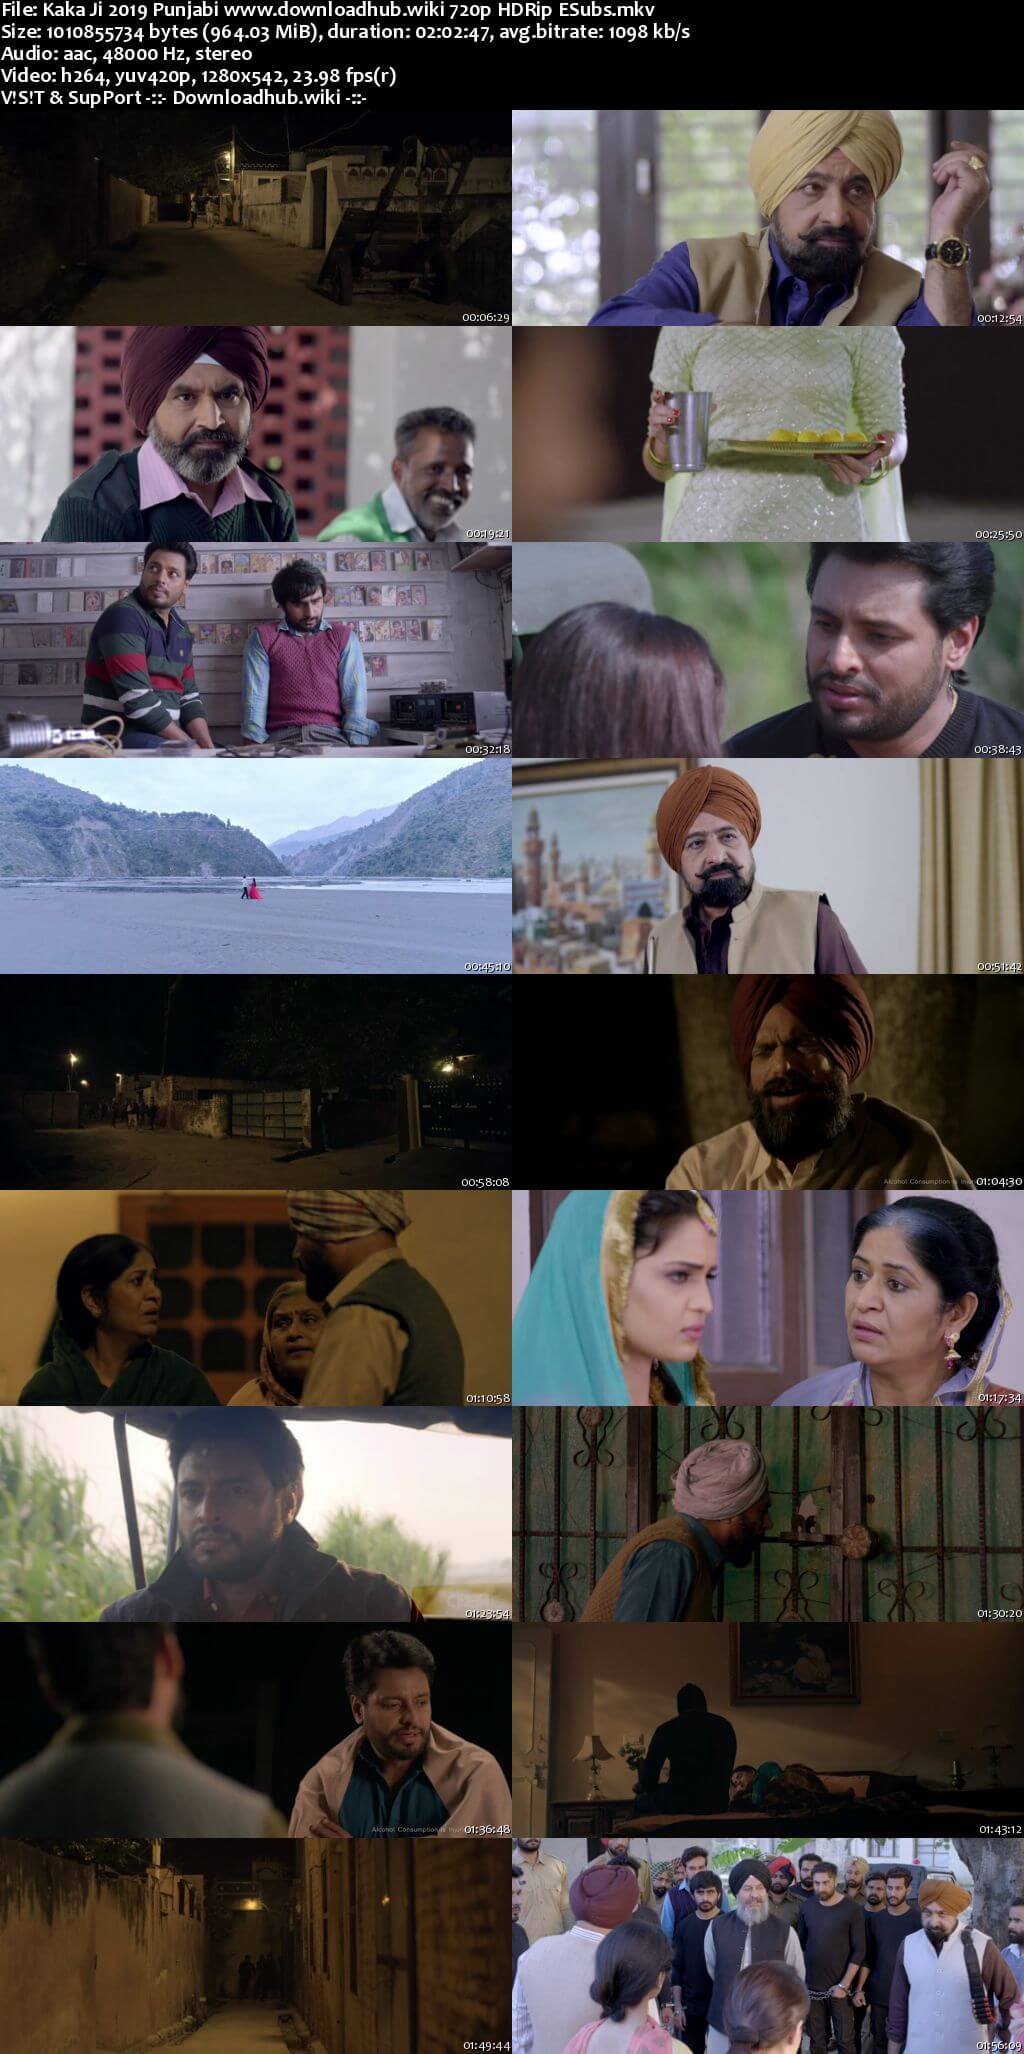 Kaka Ji 2019 Punjabi 720p HDRip ESubs